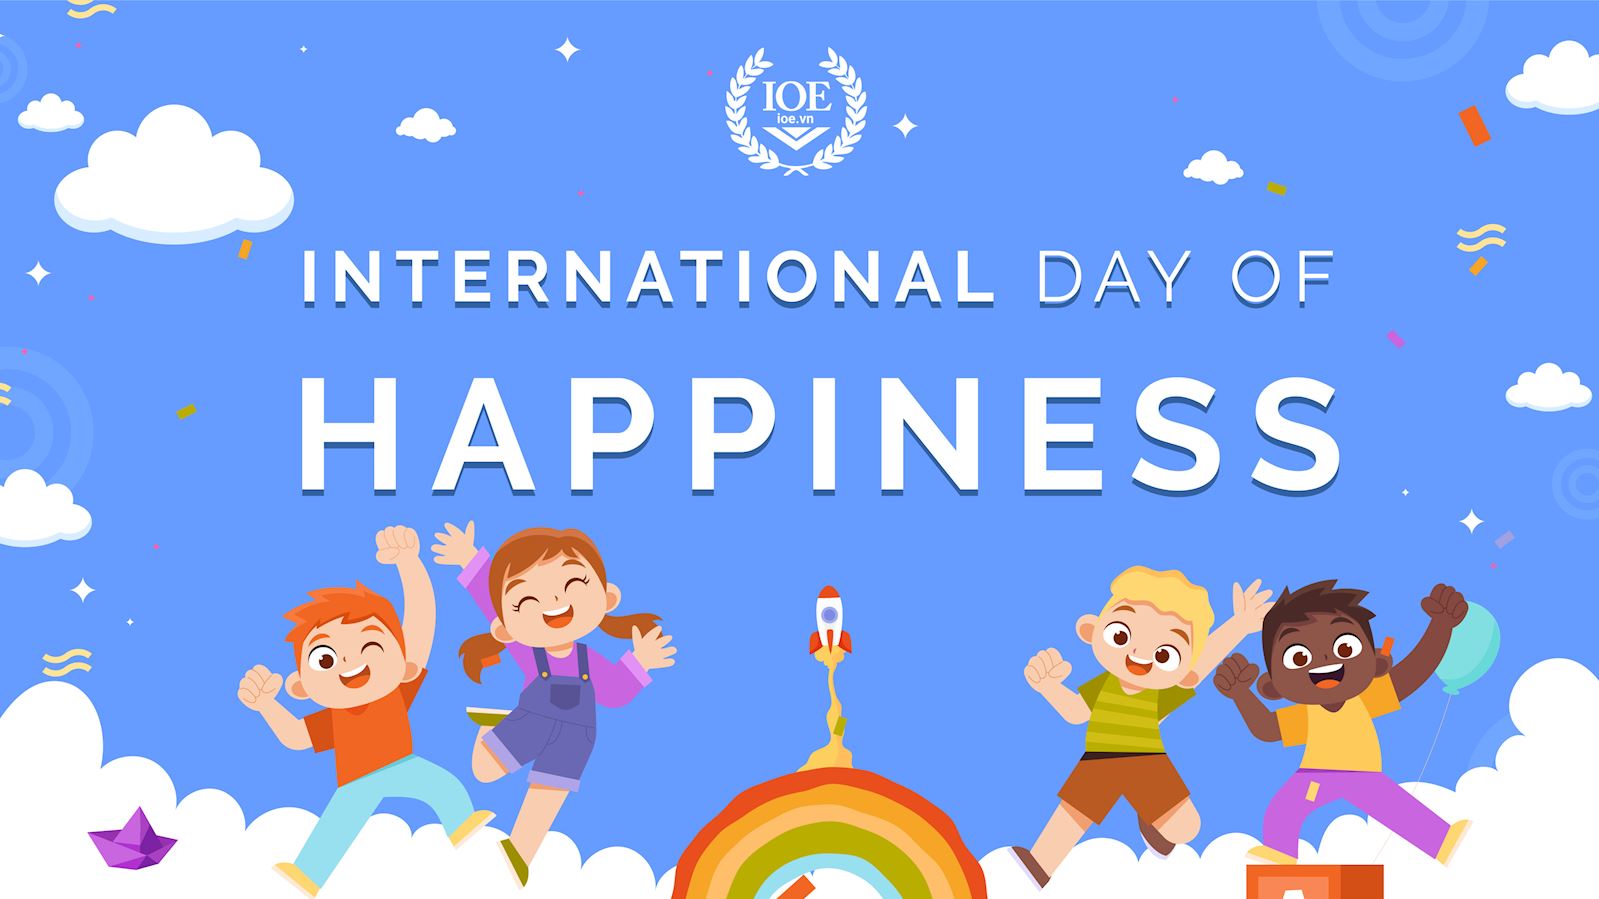 Happy International Day of Happiness! - Chúc mừng Ngày Quốc tế Hạnh Phúc!